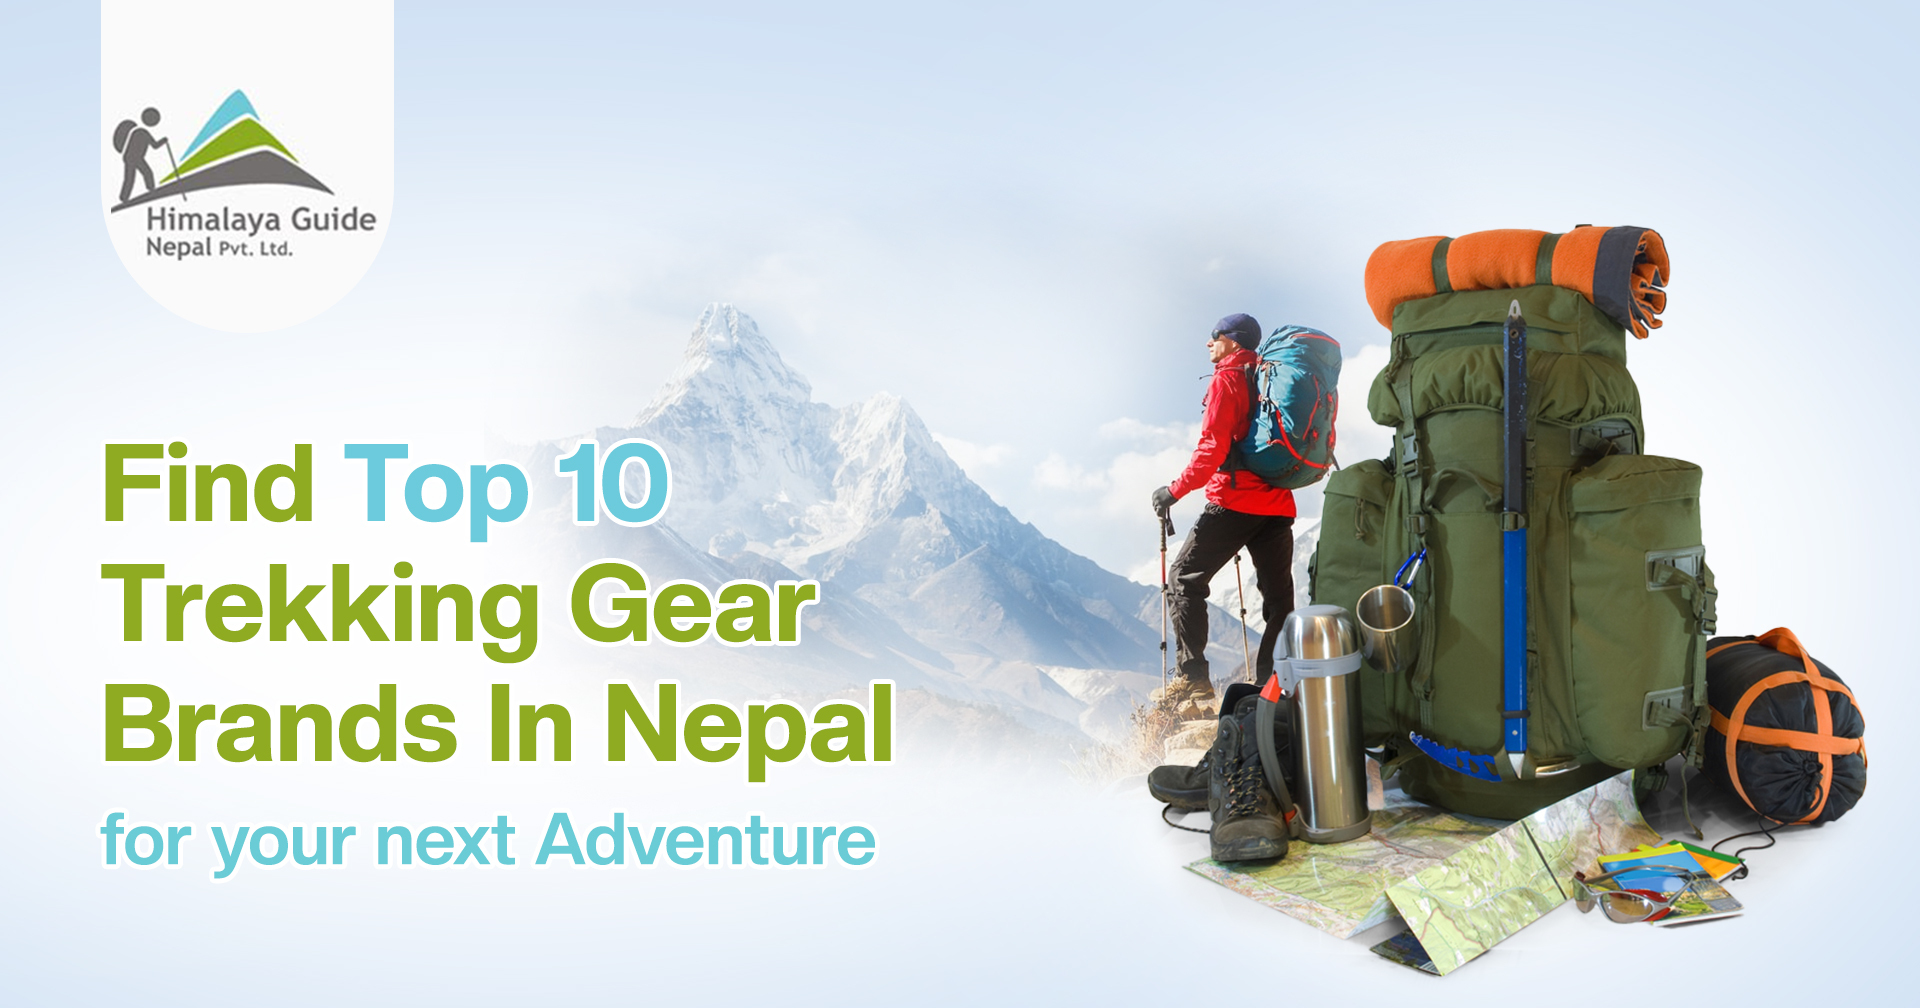 Trekking Gear brands in Nepal